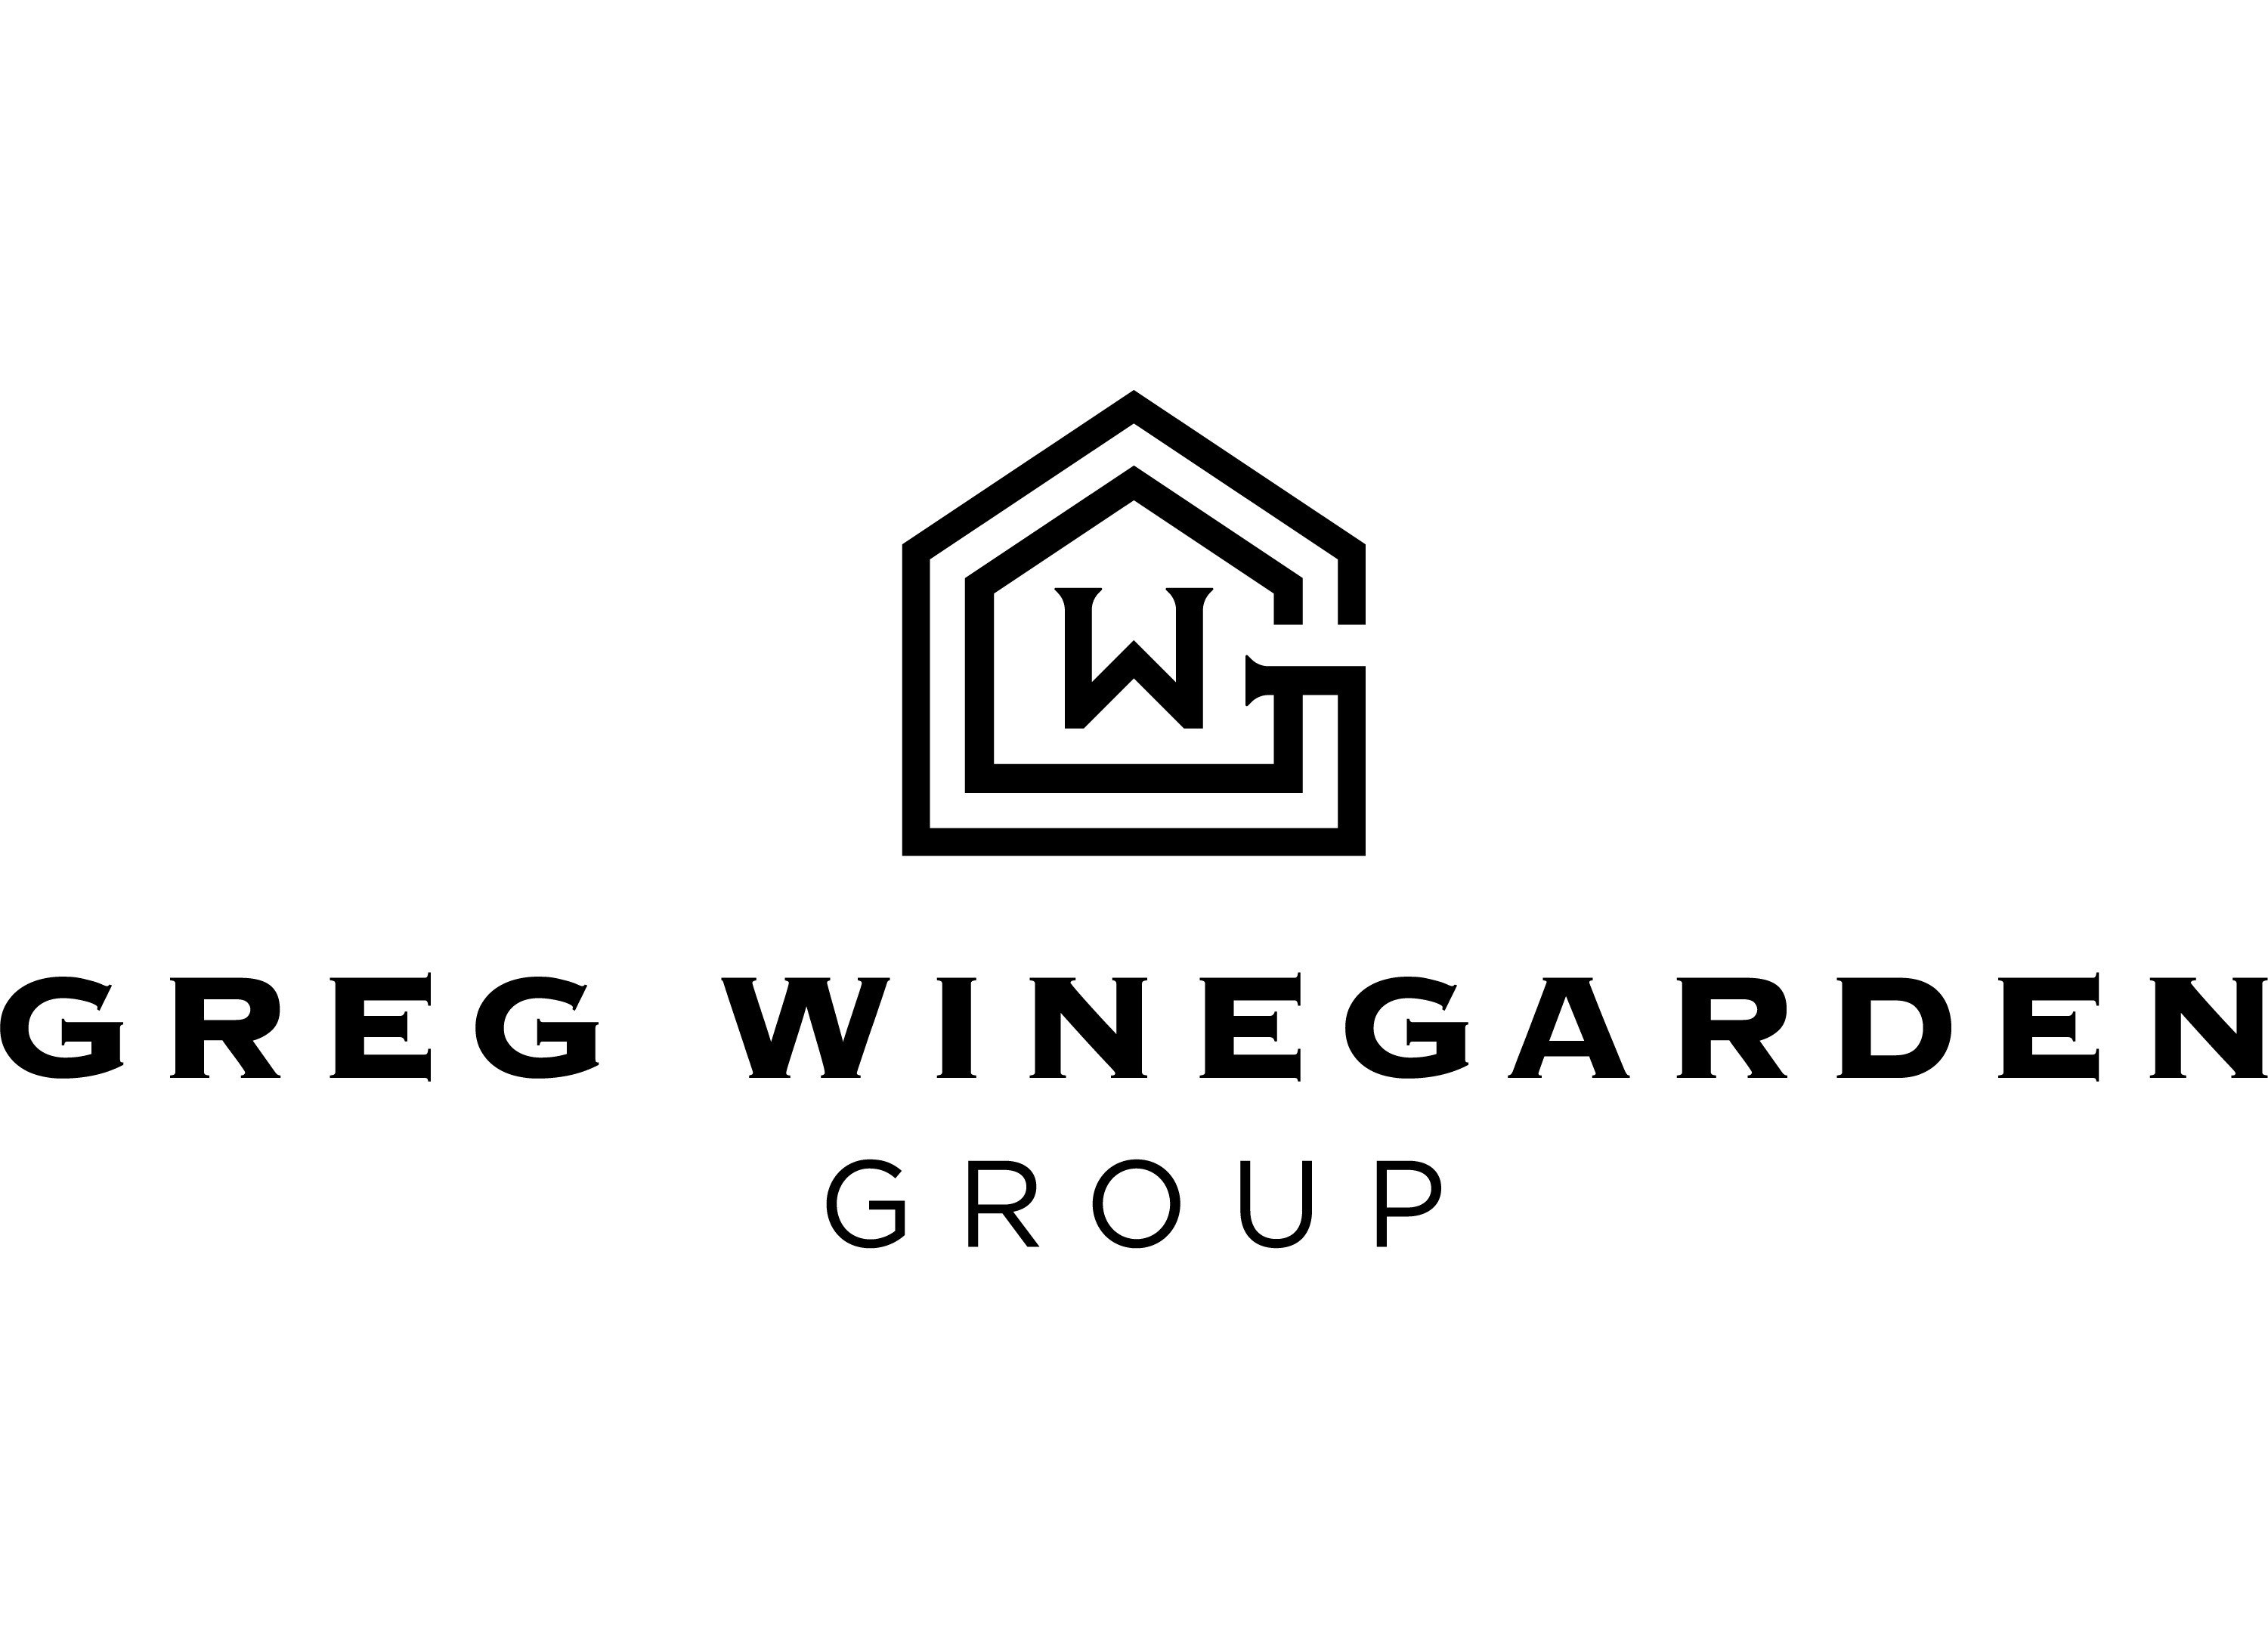 Greg Winegarden Real Estate Group